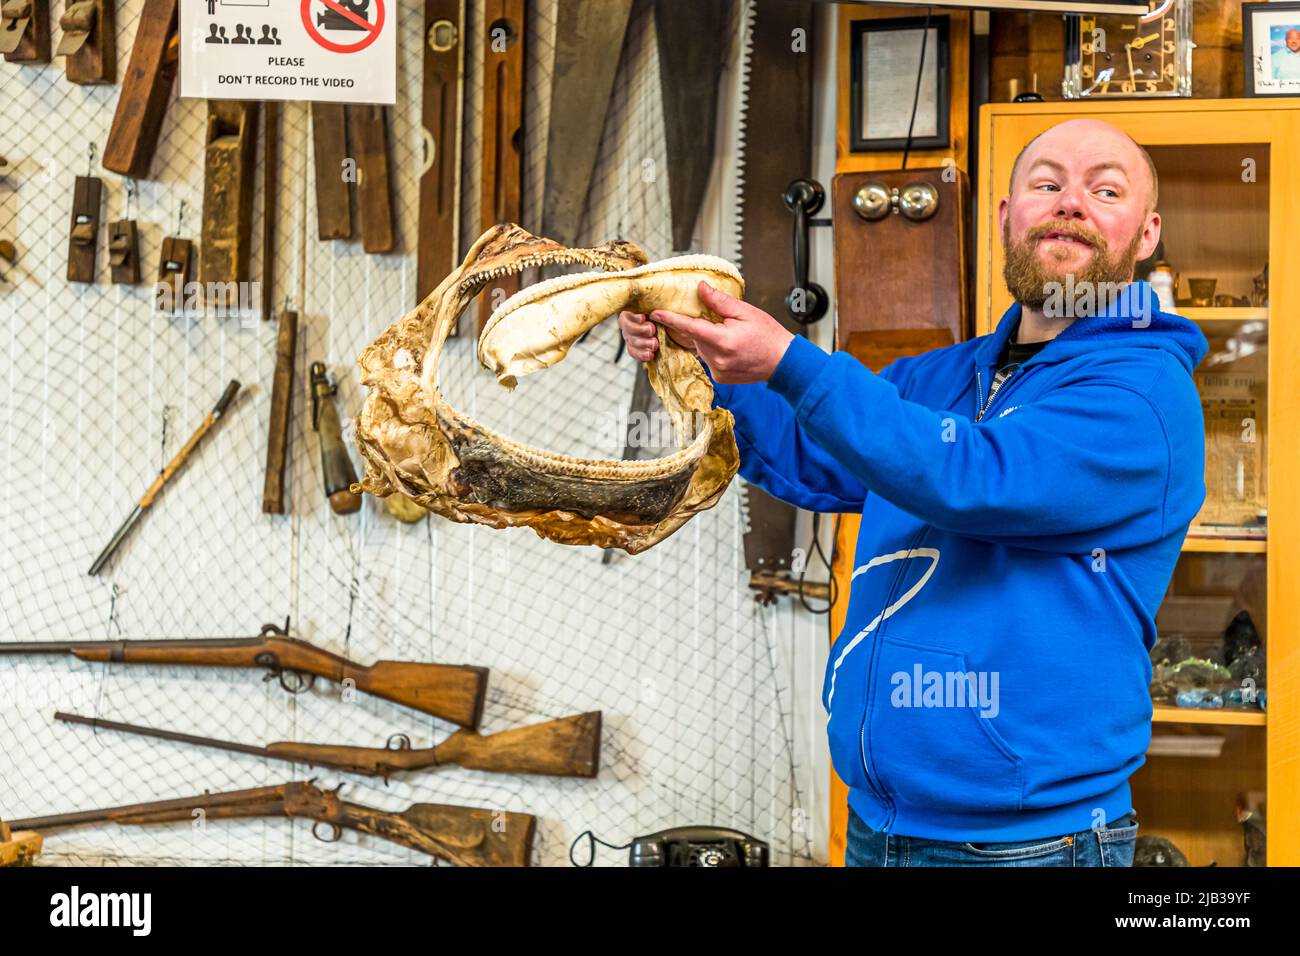 Guðjón Hildibrandsson è direttore del Museo degli squali di Bjarnahöfn, a conduzione familiare. Utilizza una bocca di squalo per dimostrare il comportamento di alimentazione degli squali. Bjarnarhöfn Iceland Shark Museum, dove si risolve il mistero dello squalo fermentato. Qui viene presentata la dentizione di uno squalo groenlandese Foto Stock